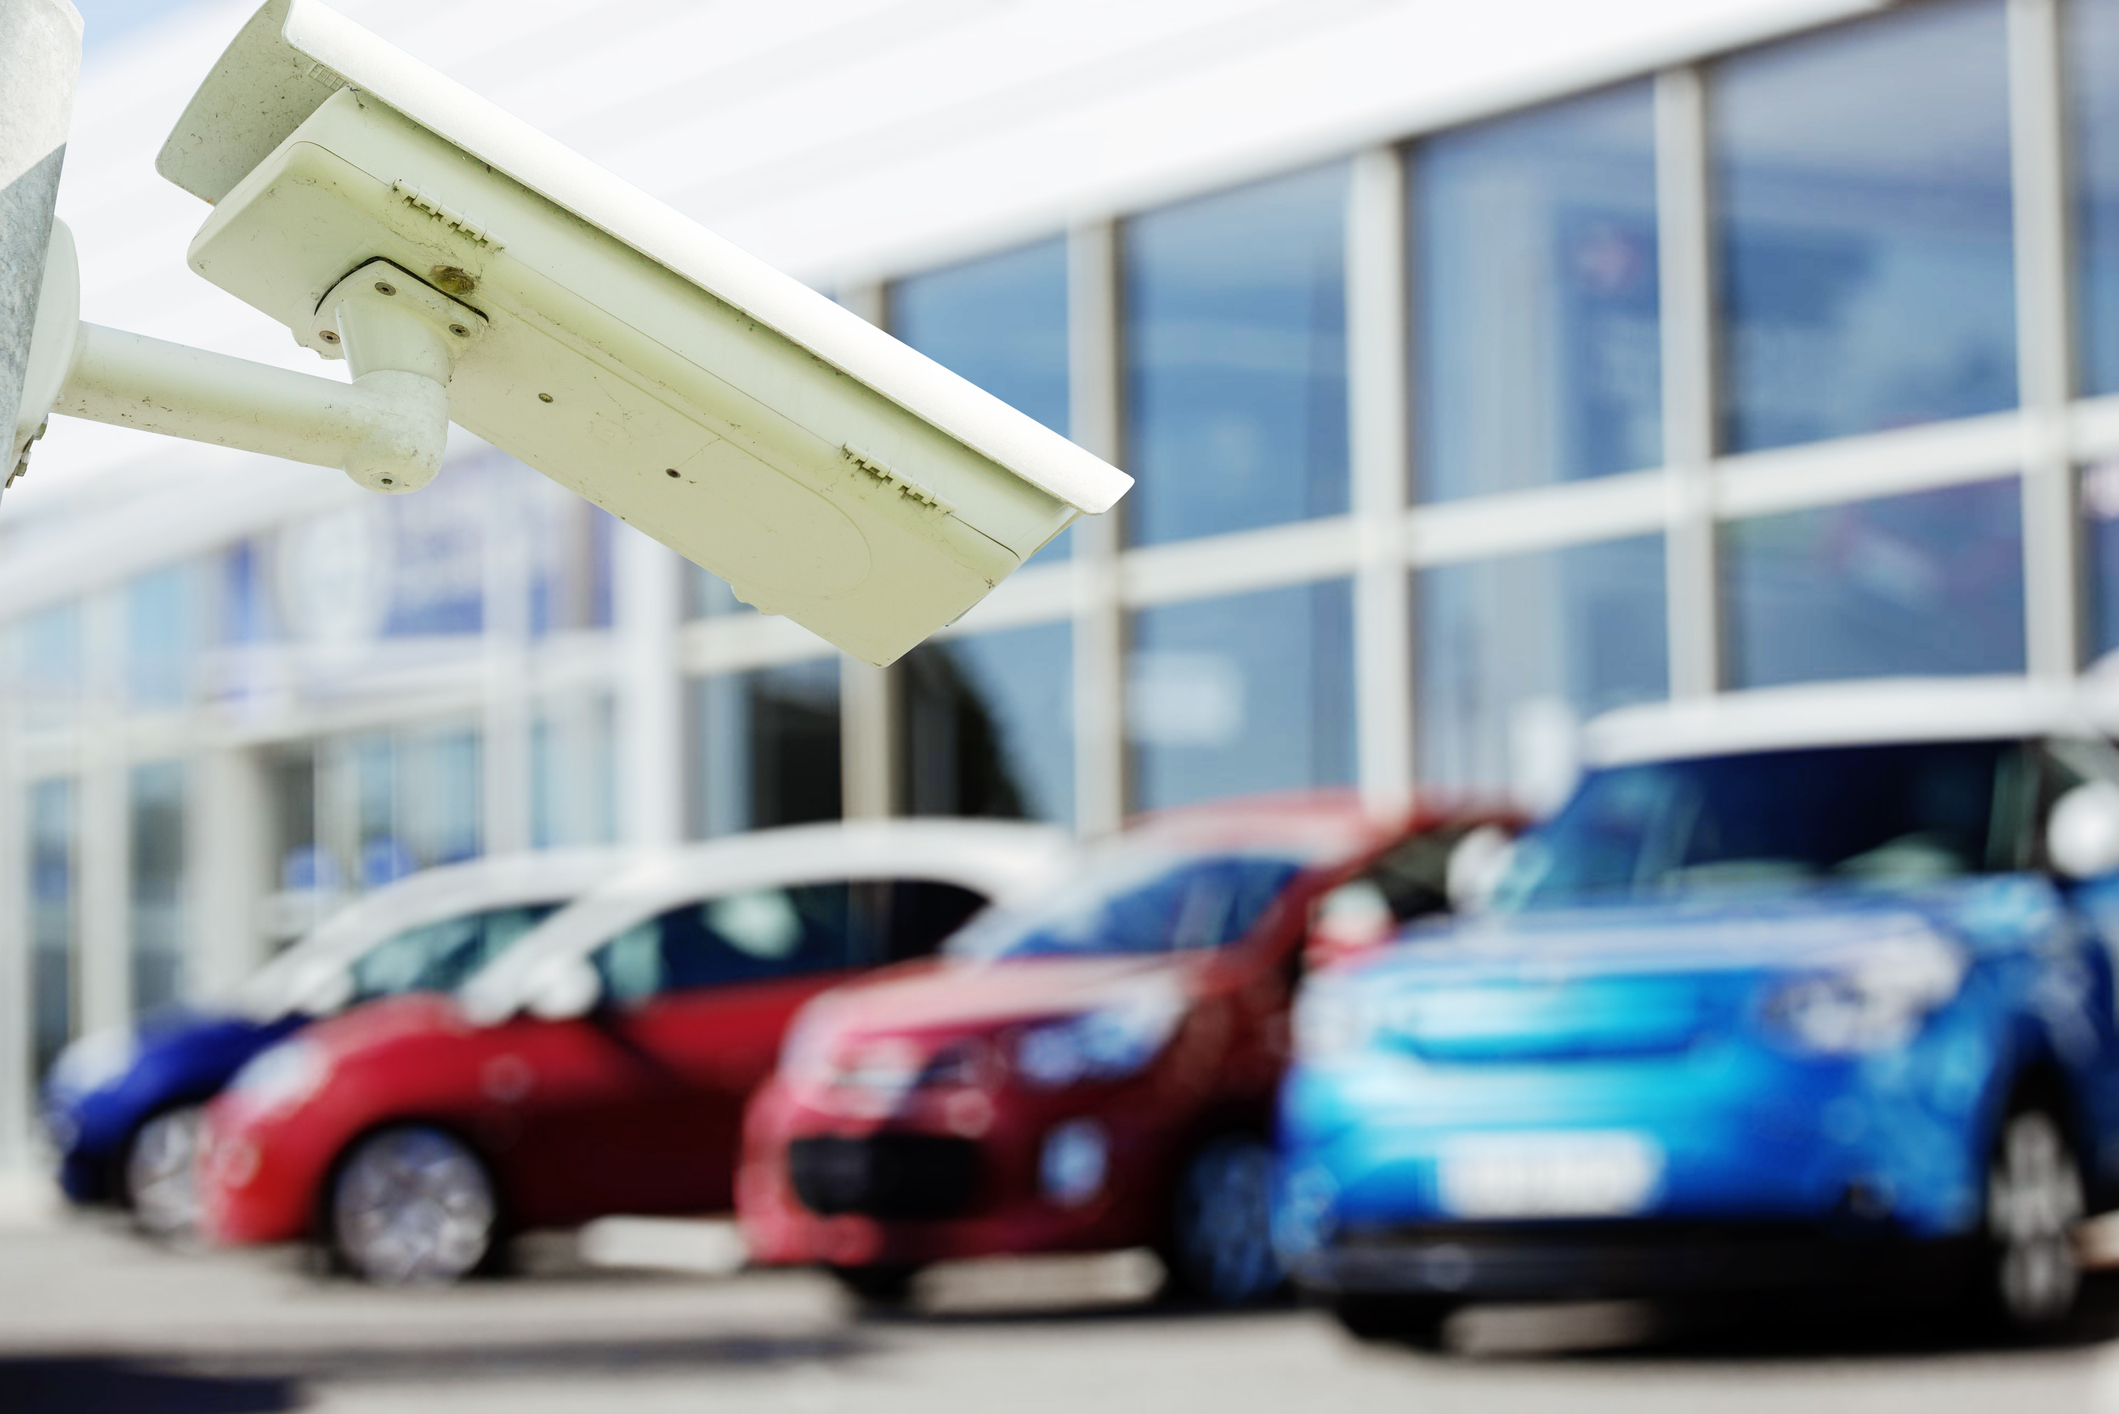 CCTV surveillance system for car dealer monitoring